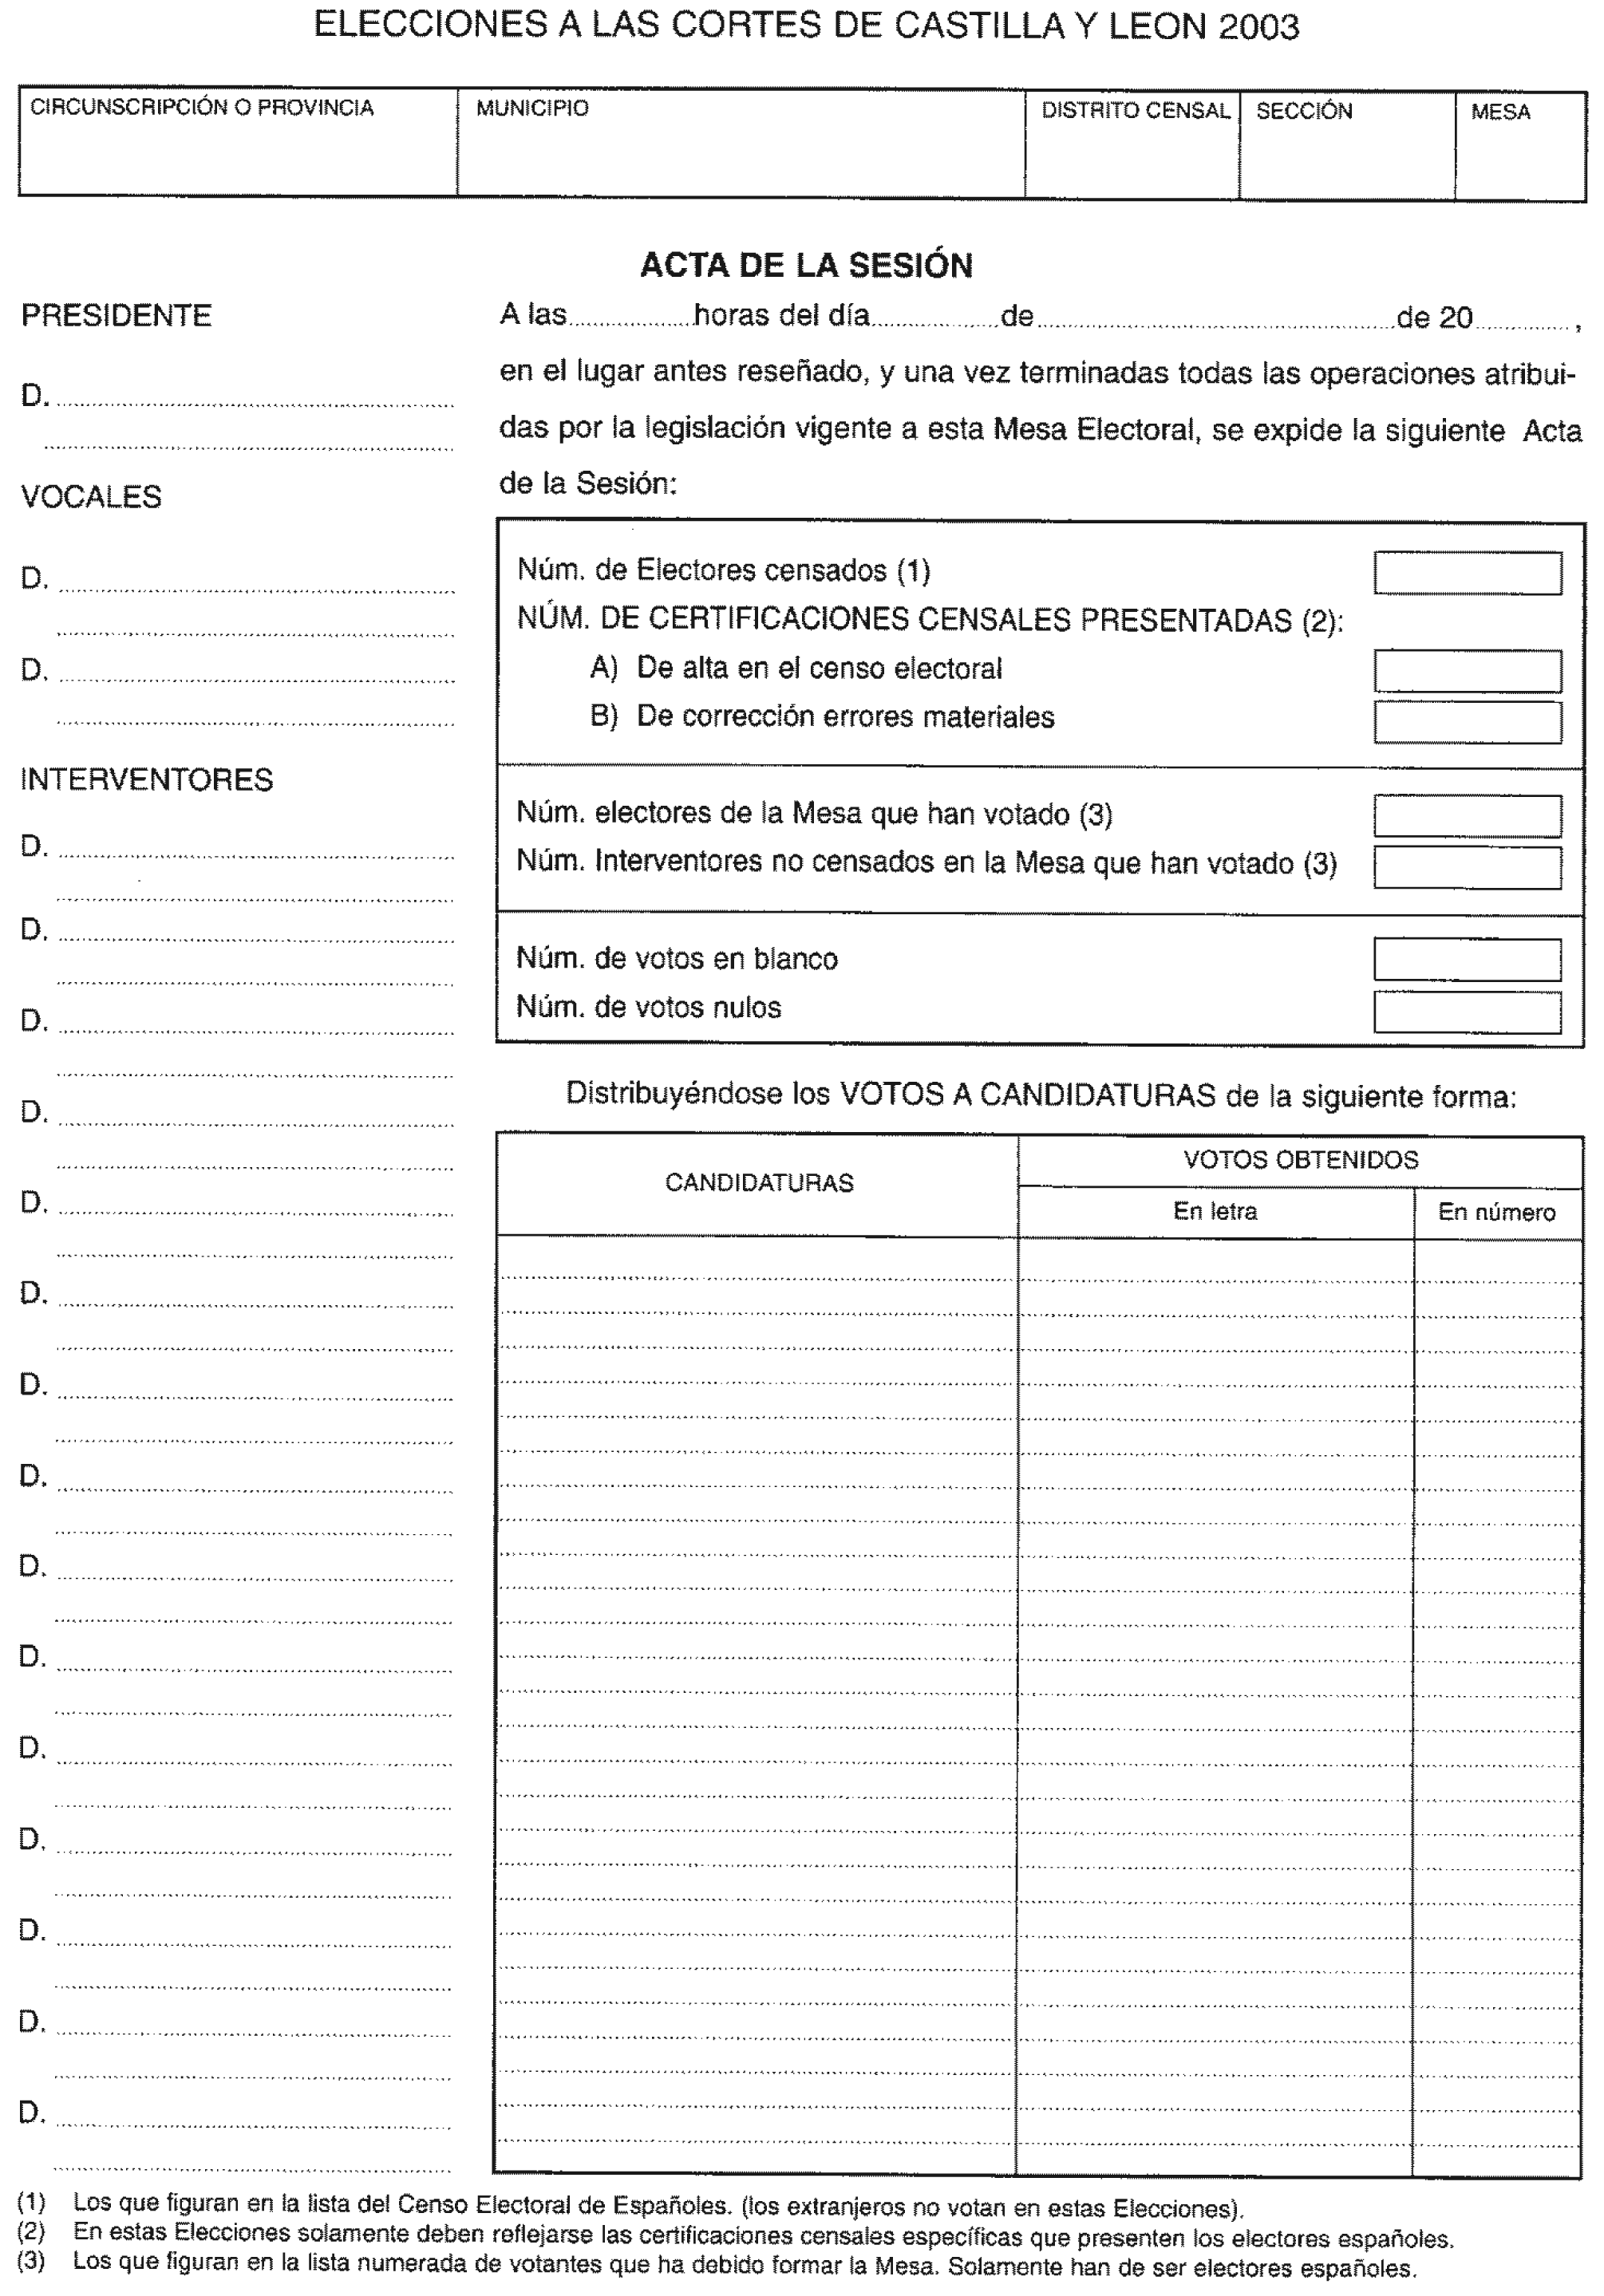 BOE.es - BOE-A-2003-9498 Acuerdo de 12 de marzo de 2003, de la Junta  Electoral Central, por el que se aprueban modelos de actas a utilizar por  las Juntas Electorales Provinciales y las